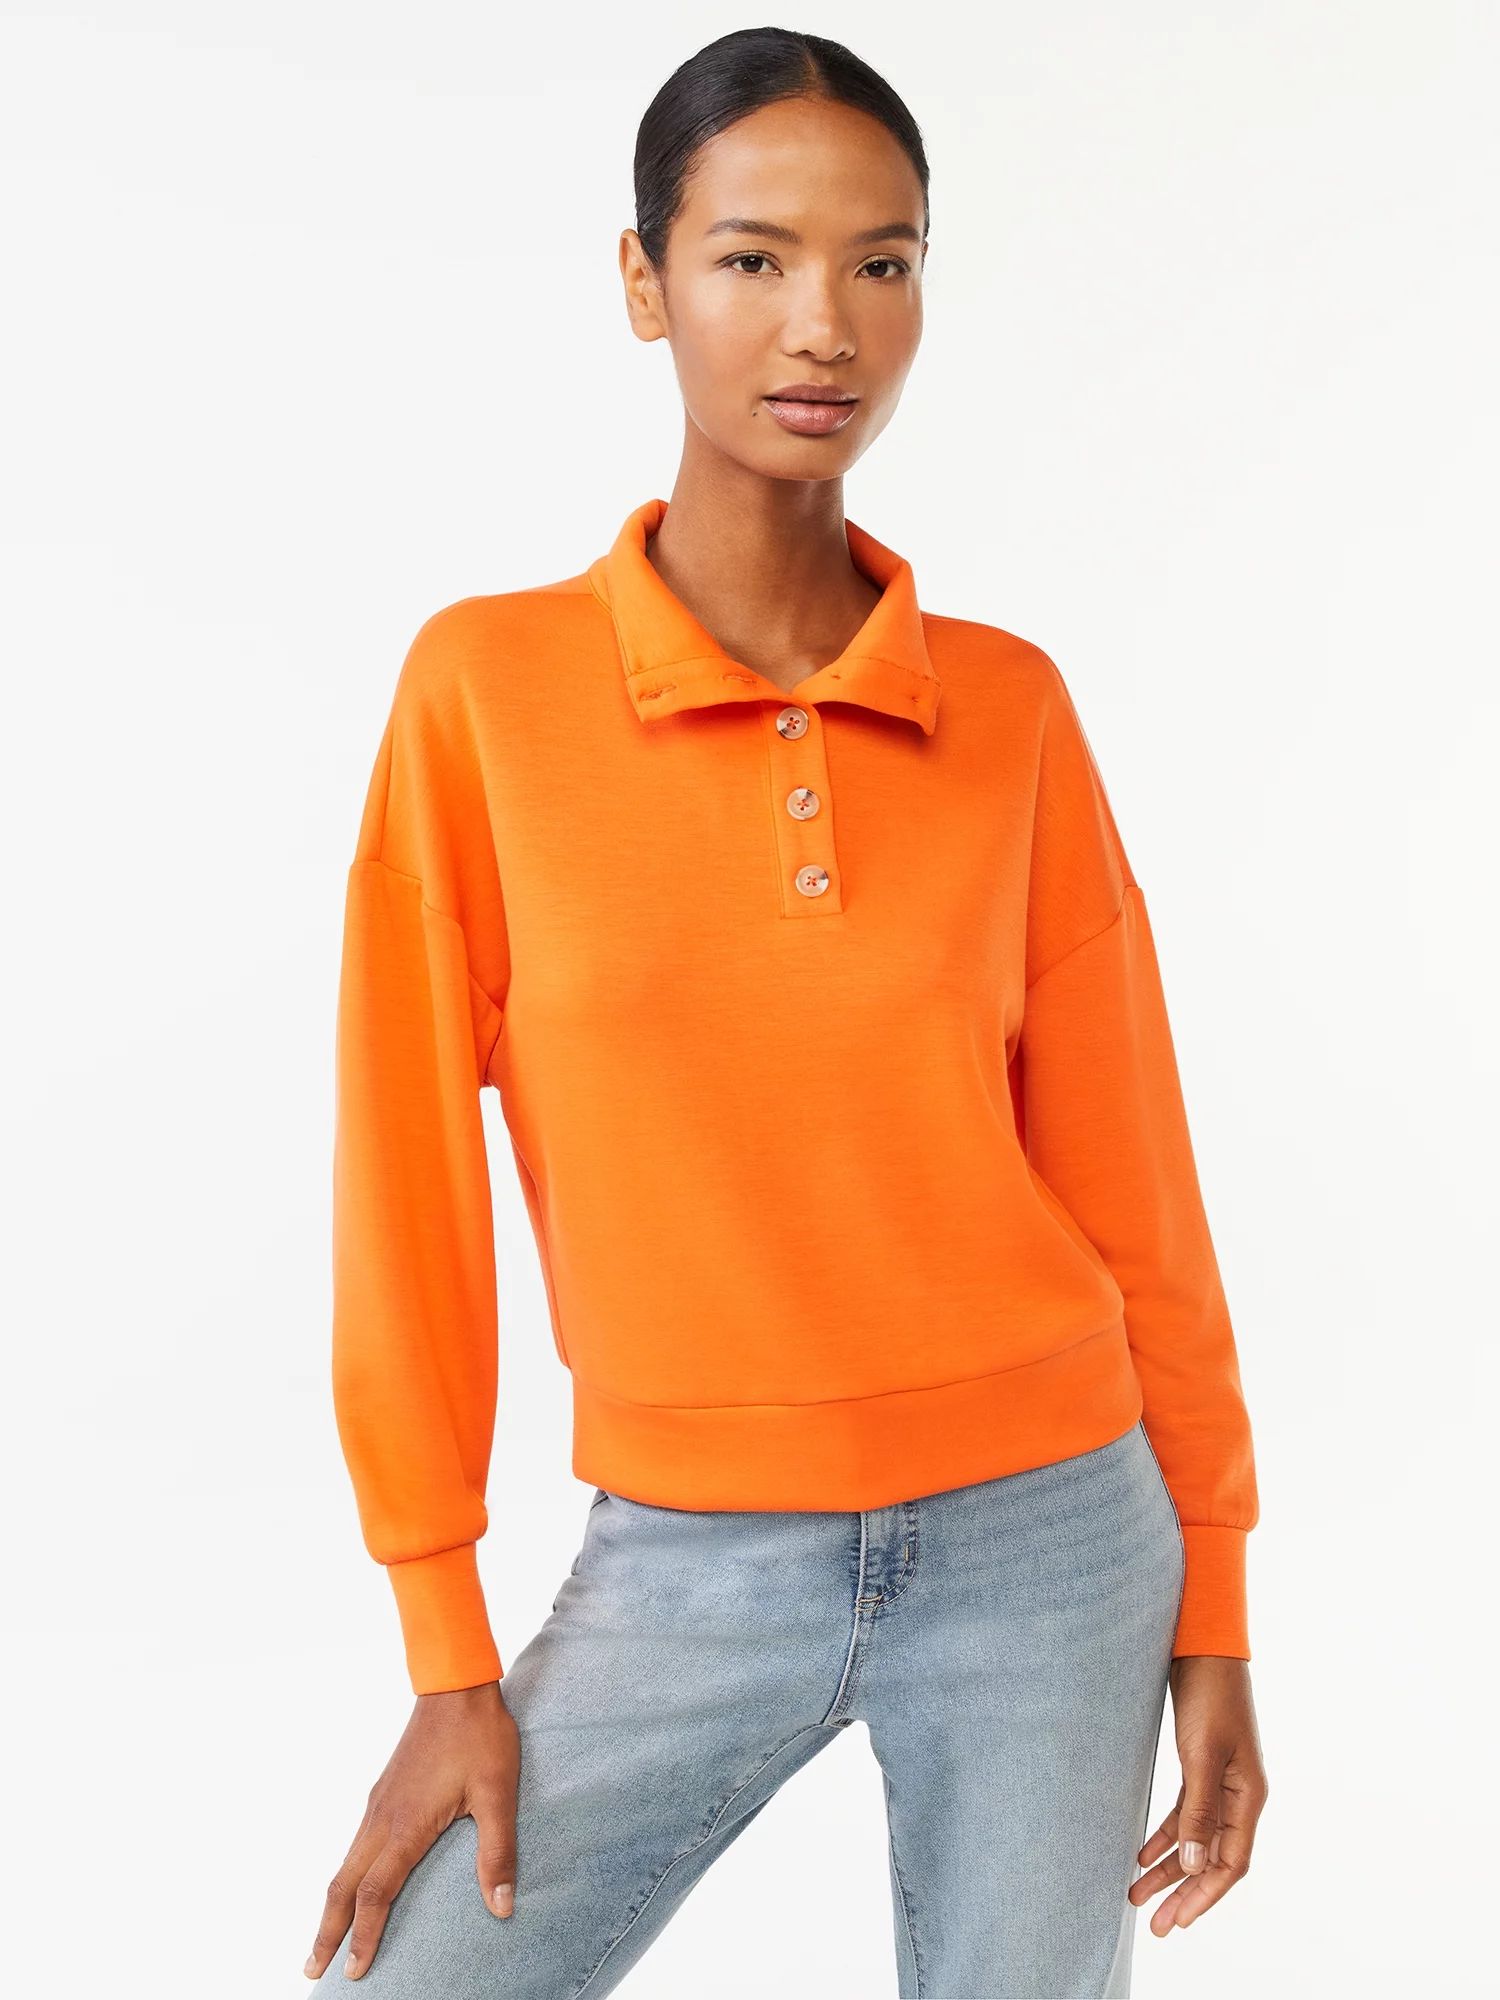 Scoop Women's Scuba Knit Button Neck Sweatshirt | Walmart (US)